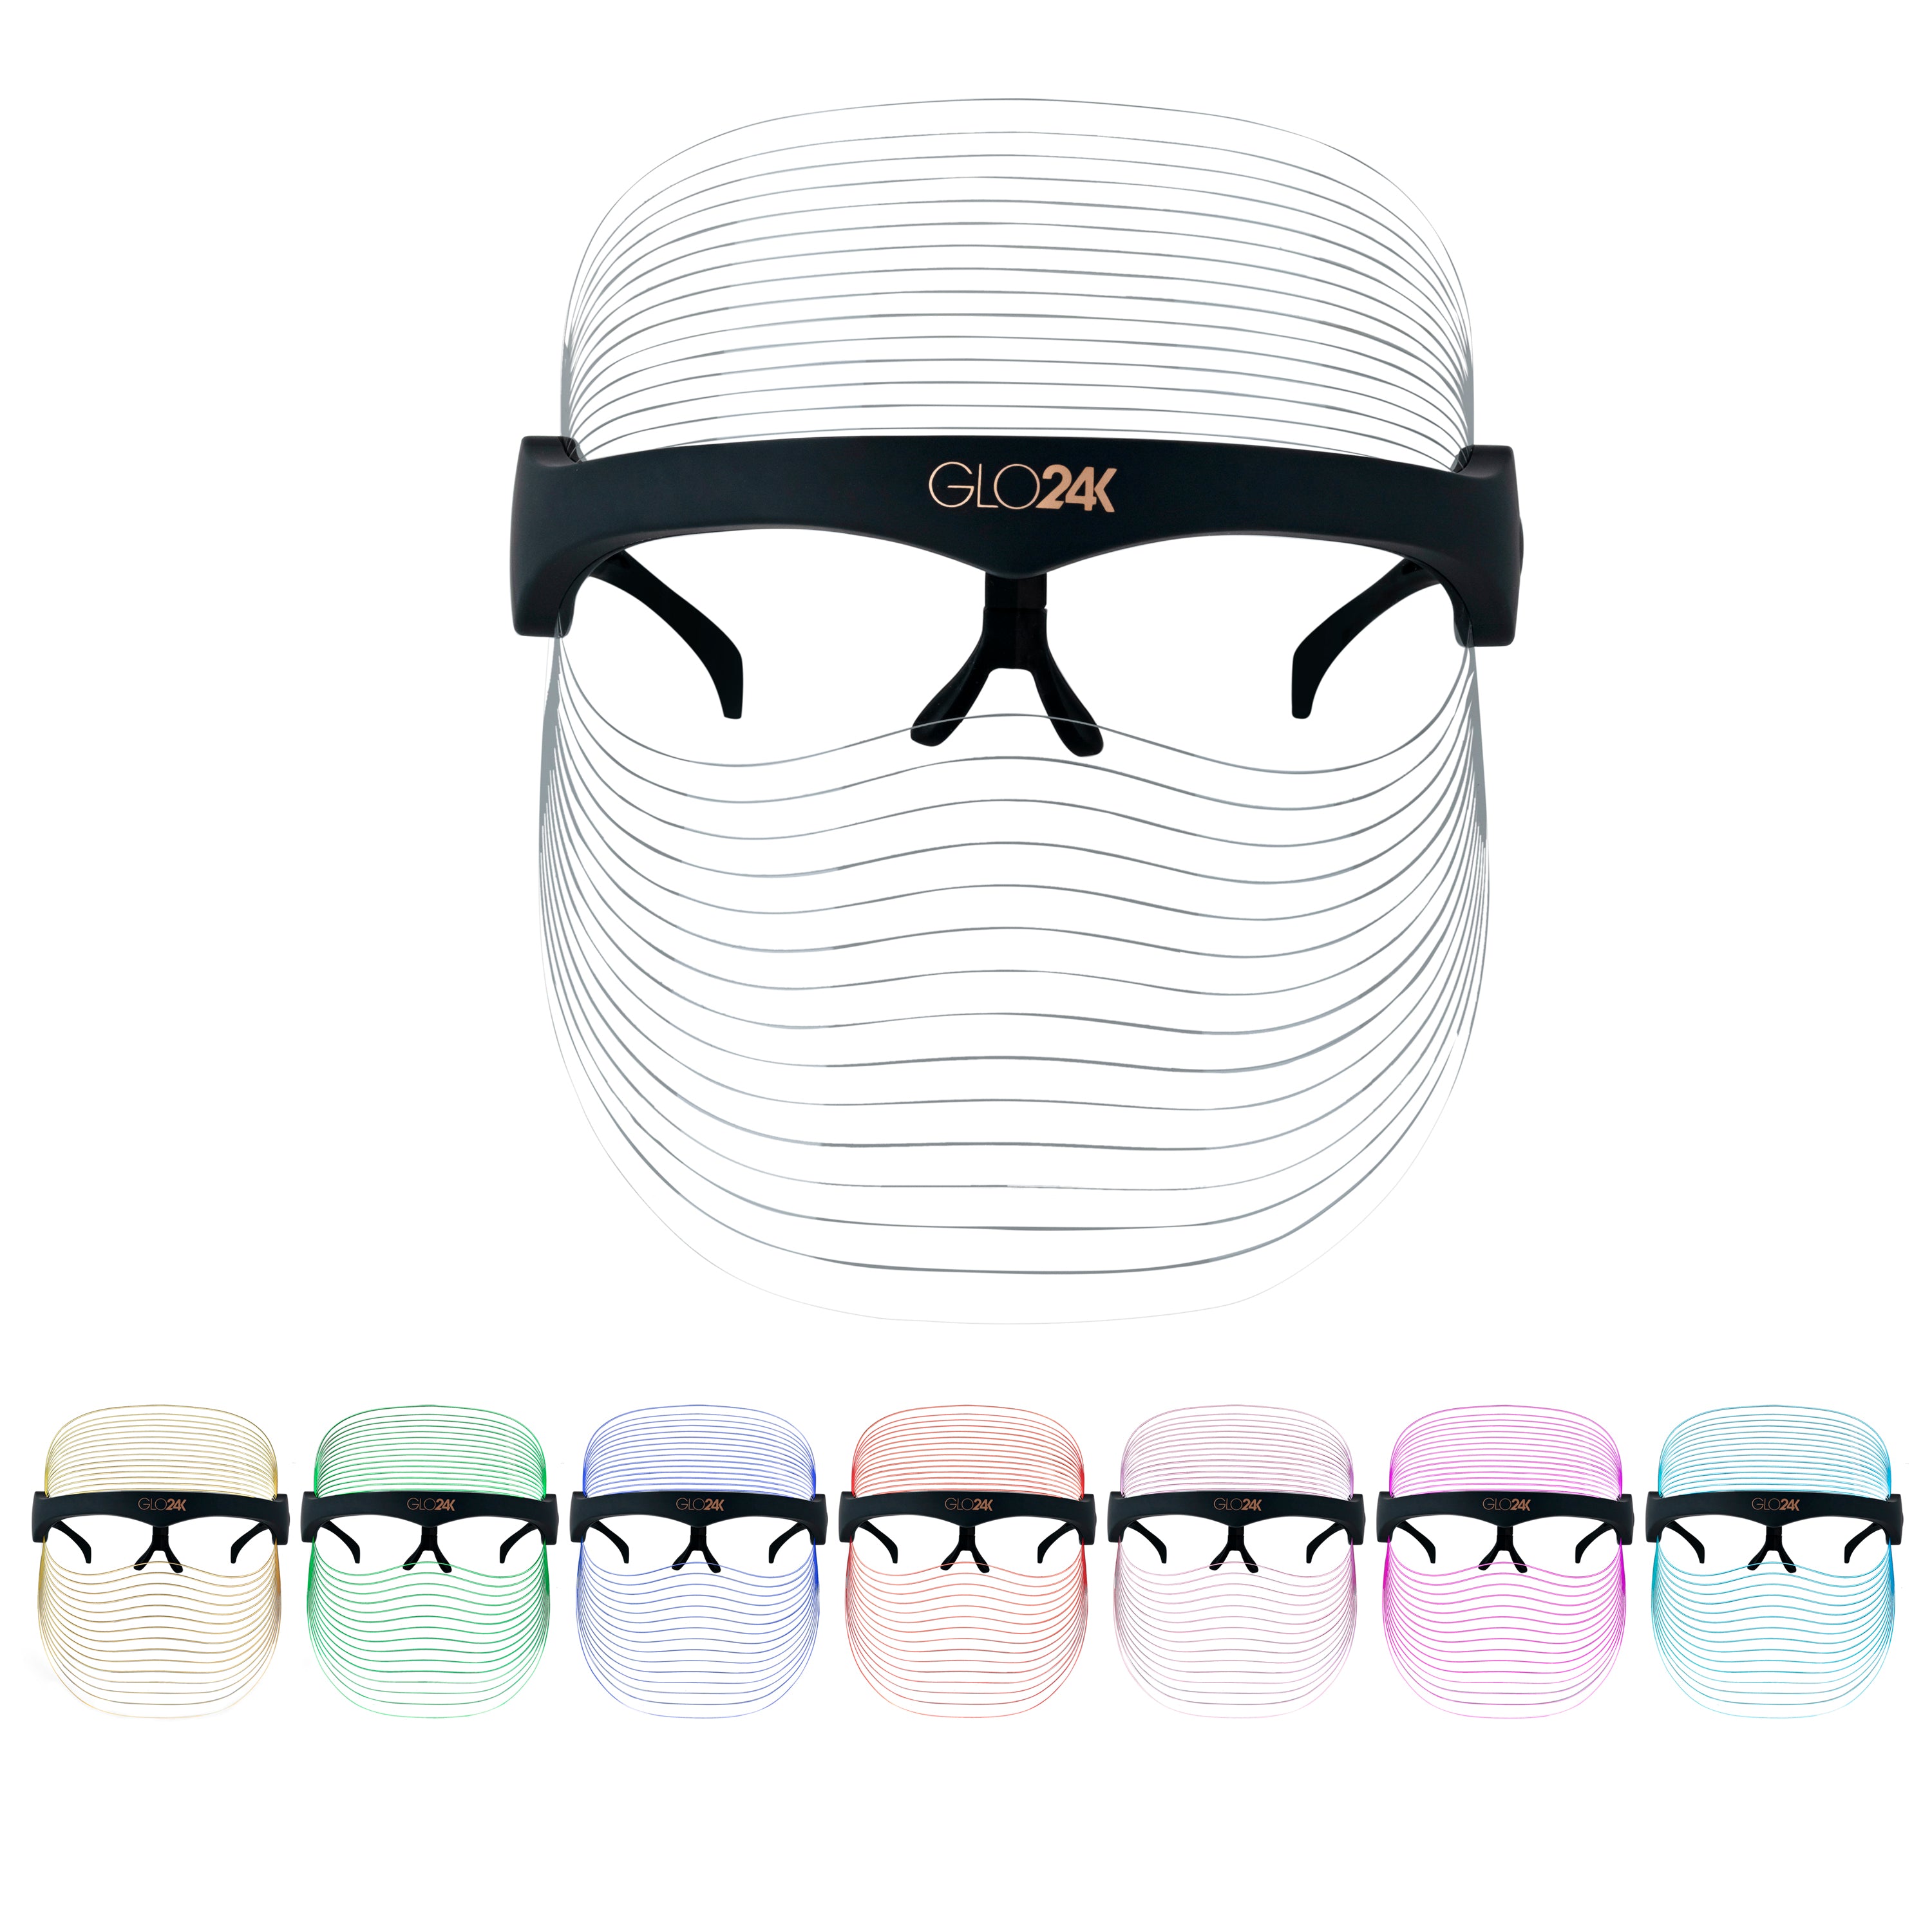 GLO24K 7 Color LED Beauty Mask